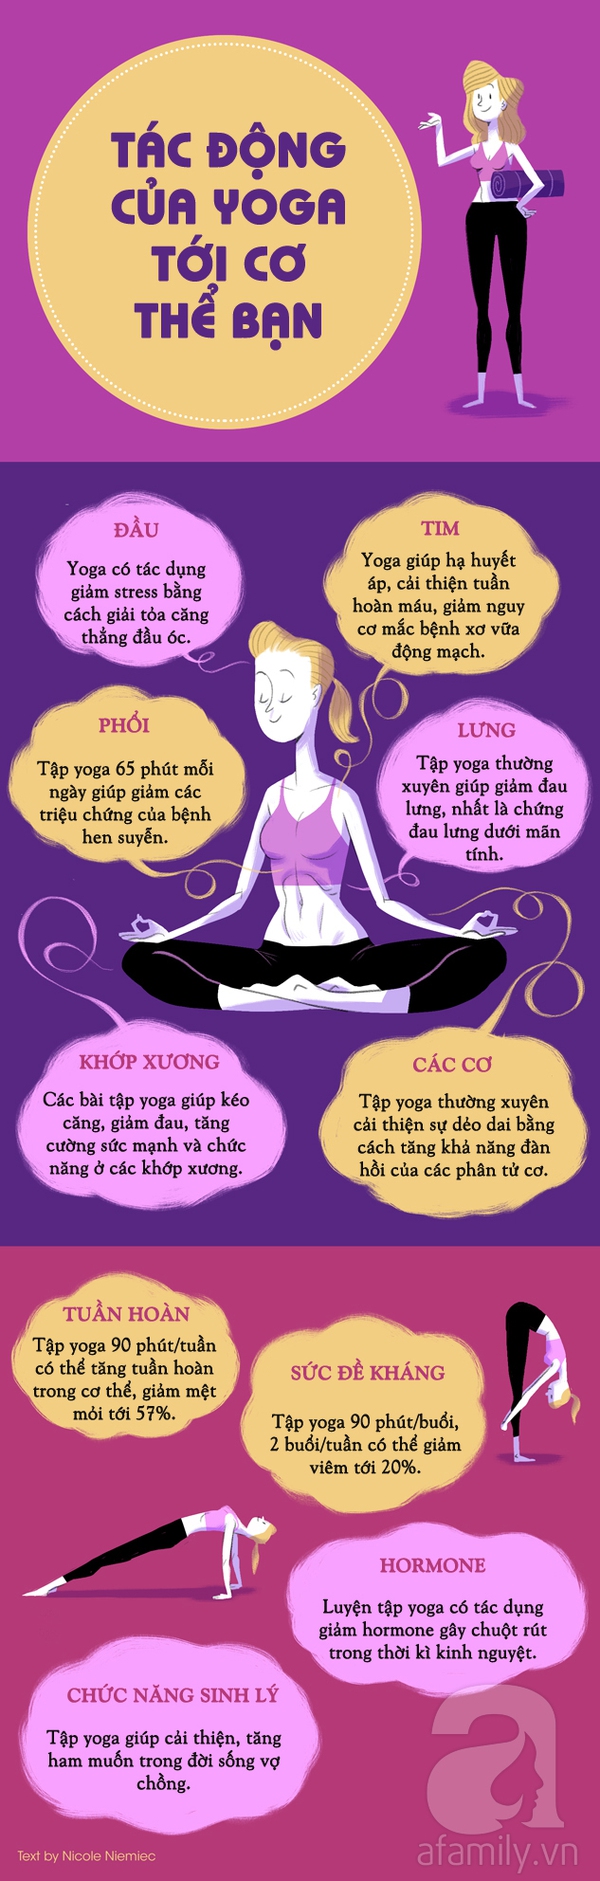 10 lợi ích của yoga đối với từng bộ phận cơ thể bạn 1